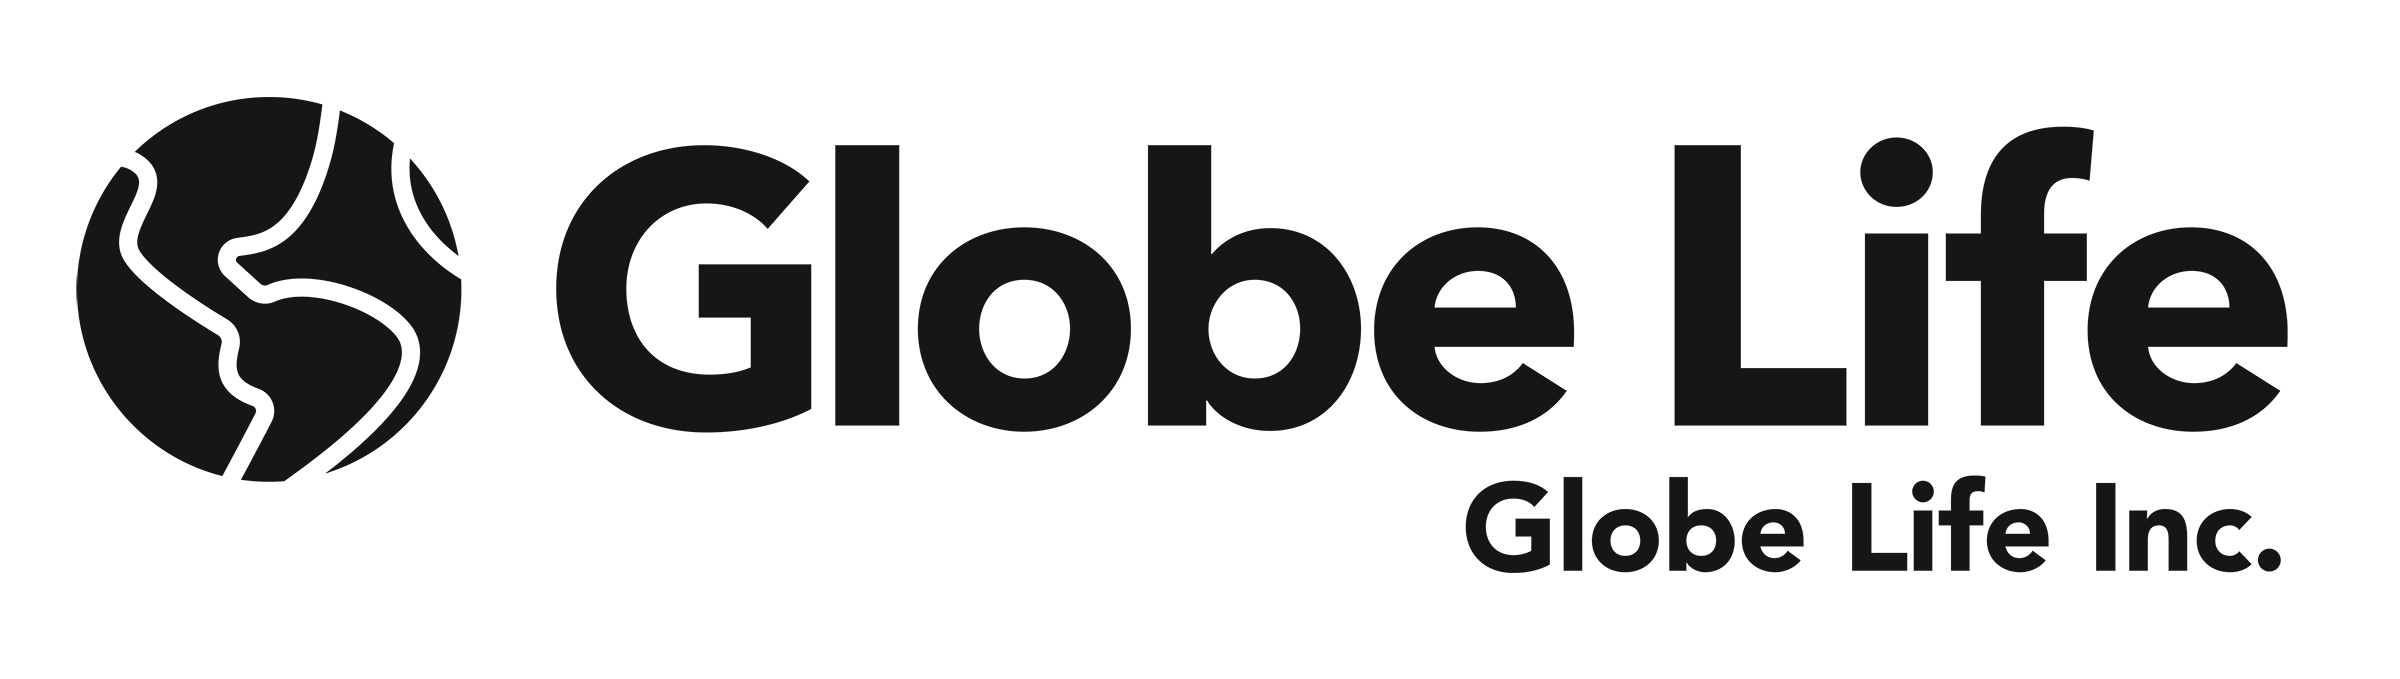 globelifeincblack.jpg